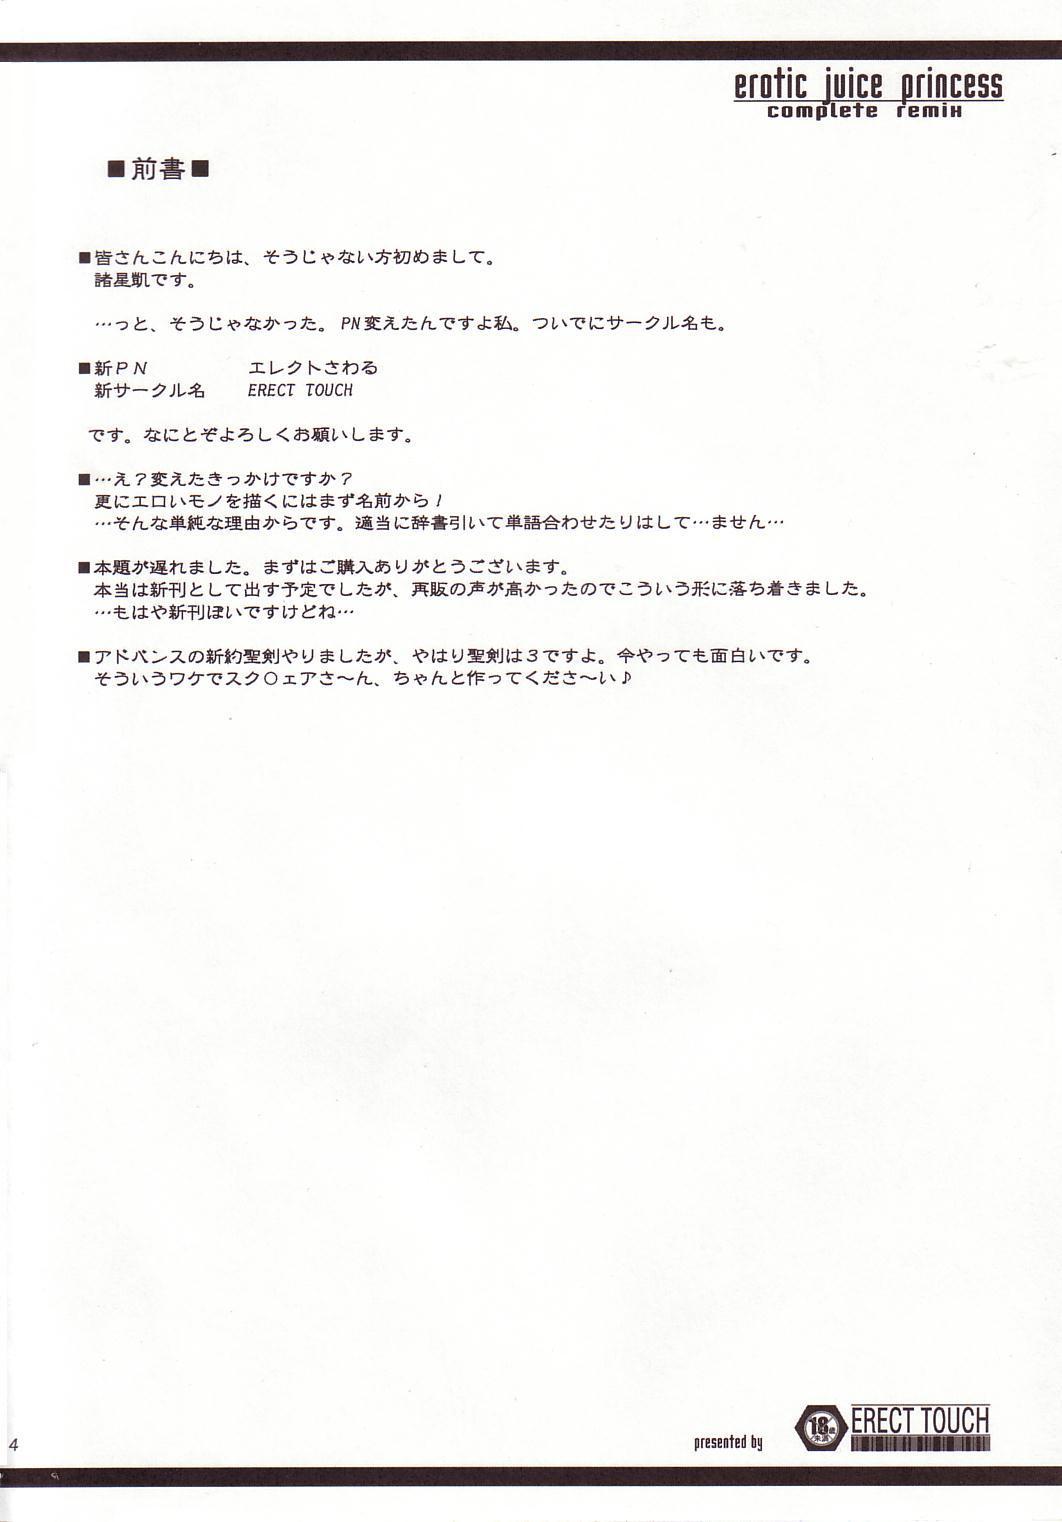 [ERECT TOUCH (エレクトさわる)] EROTIC JUICE PRINCESS COMPLETE REMIX (聖剣伝説3)